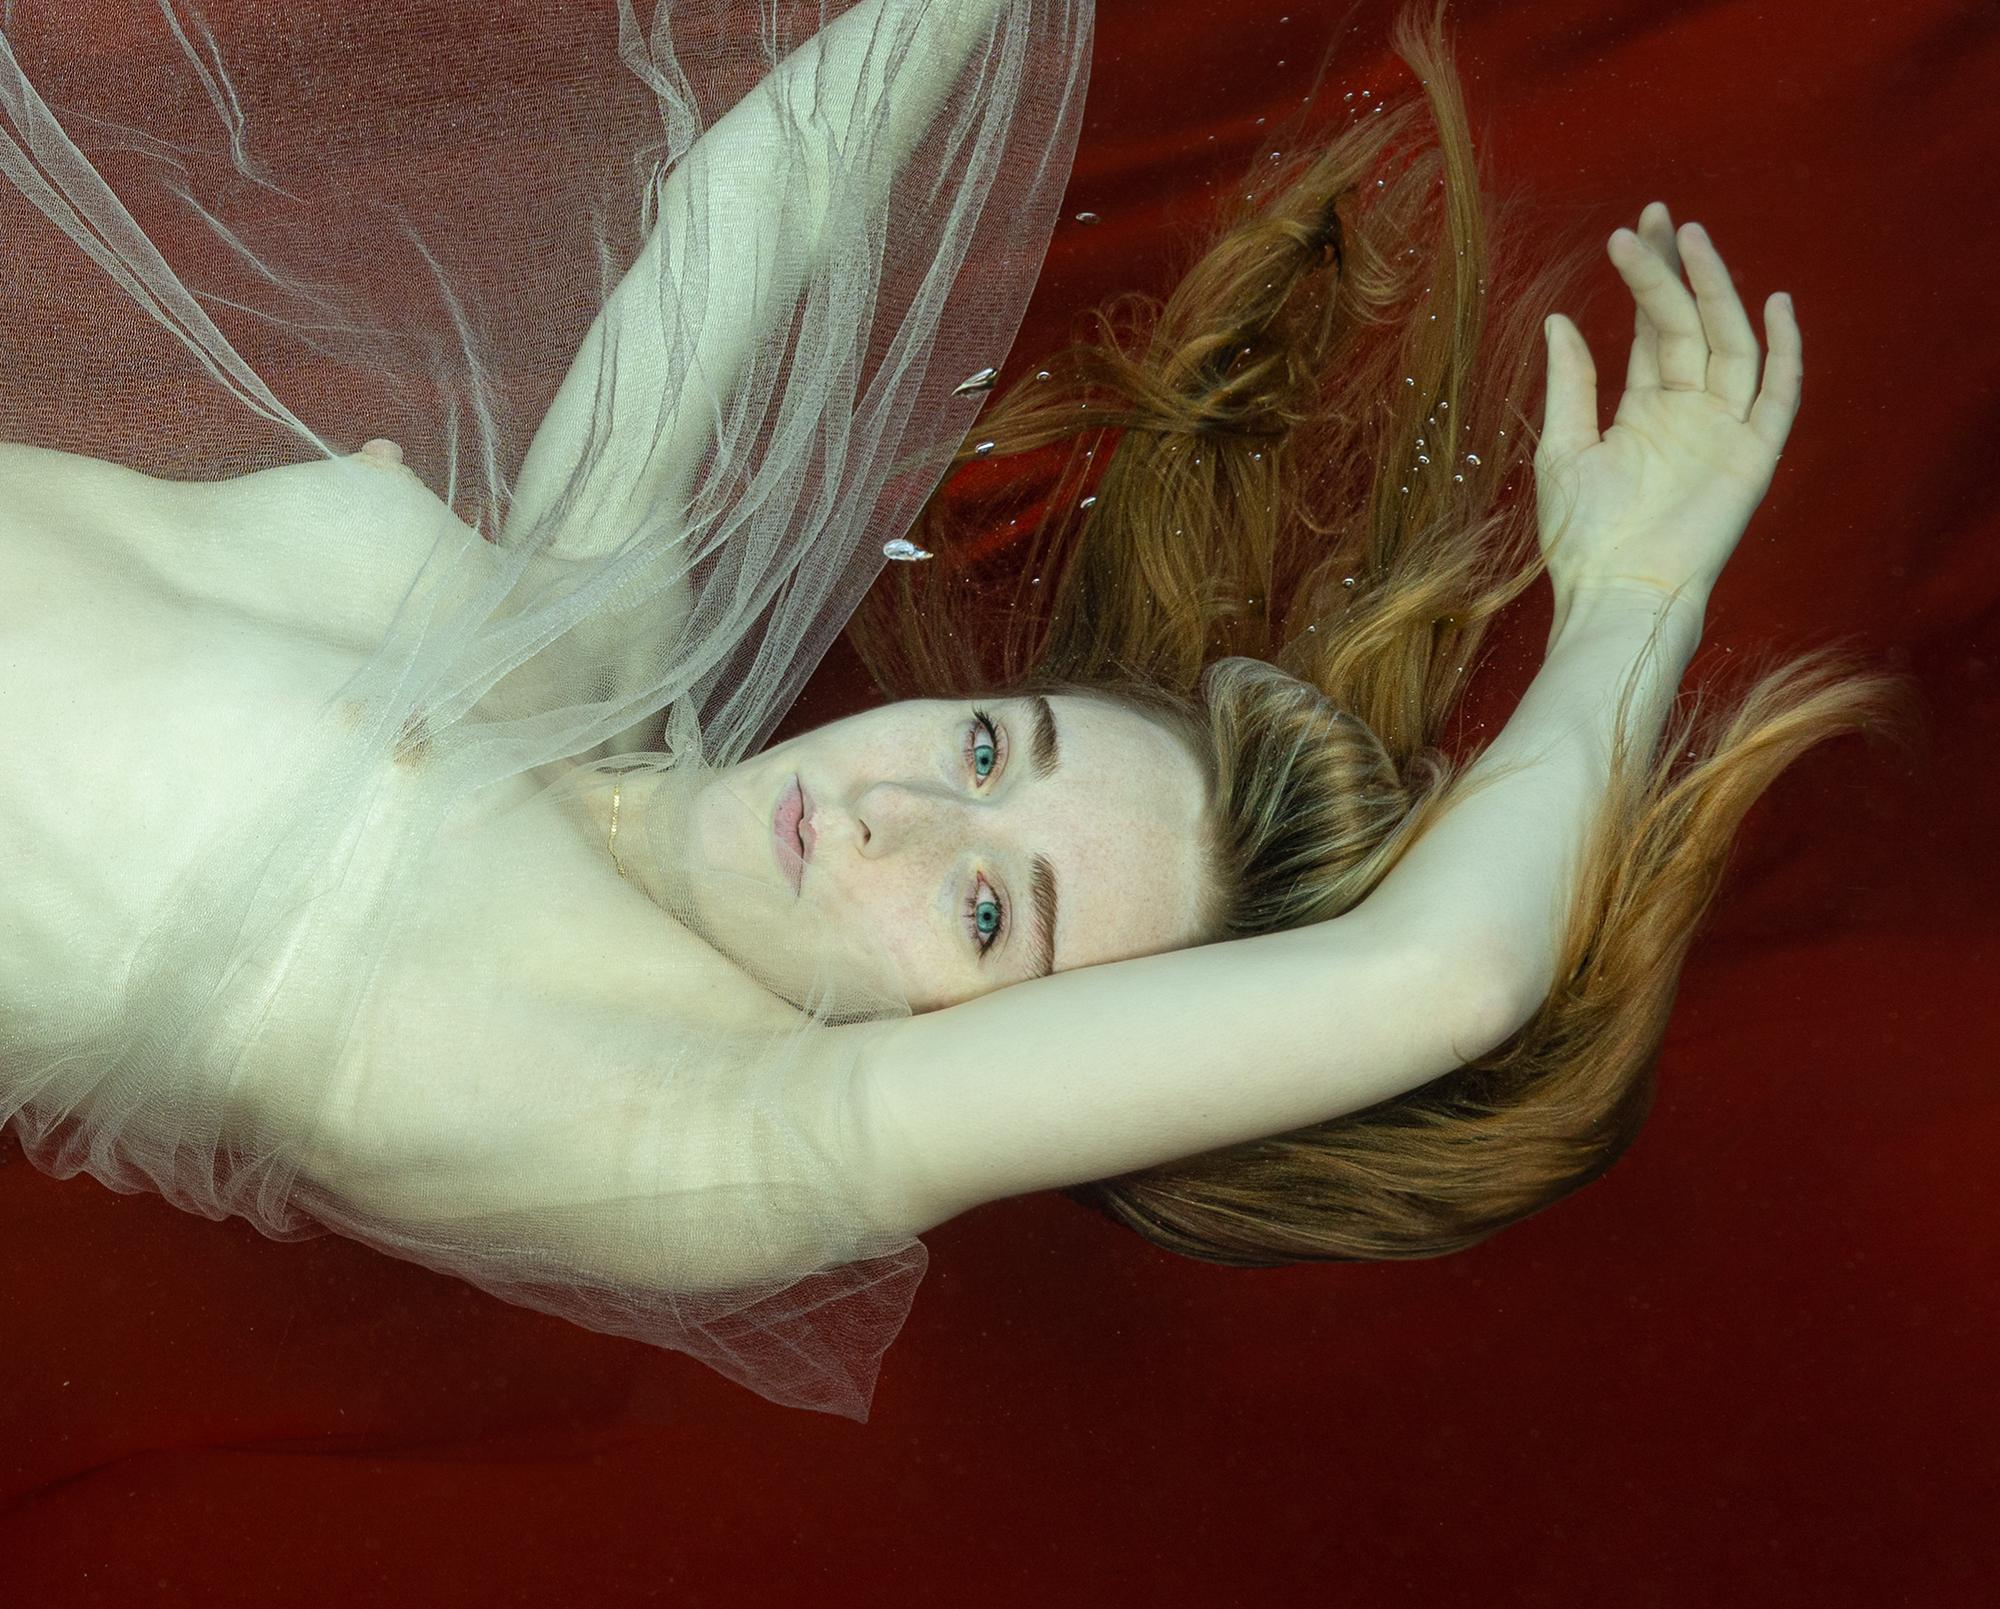 Unterwasser-Nacktfotografie – Archivalischer Pigmentdruck von Loreley – Photograph von Alex Sher